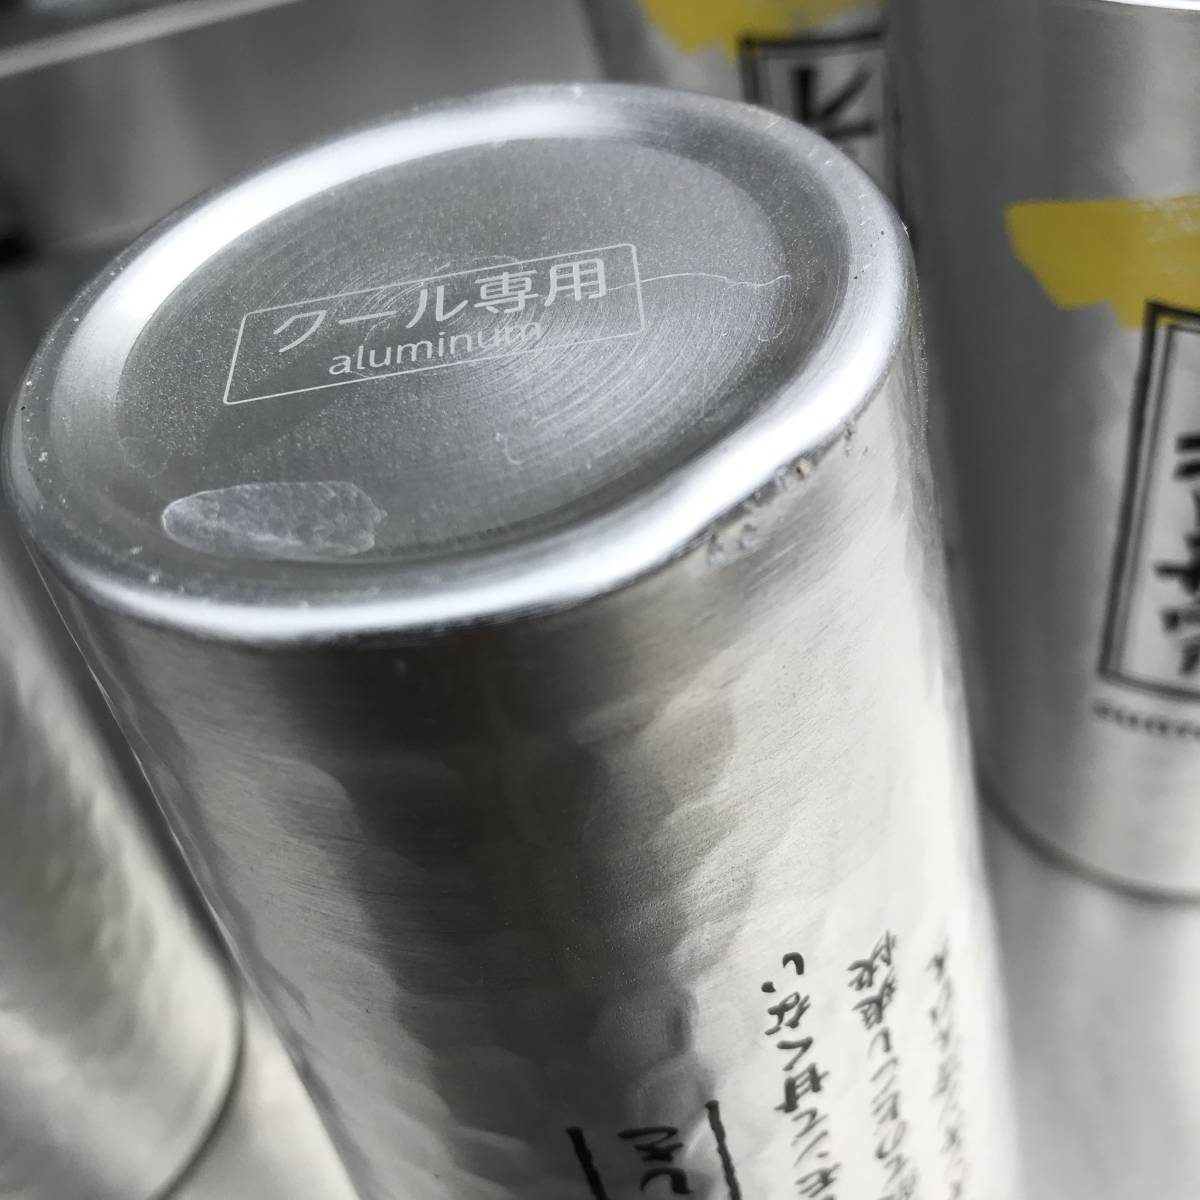 KS02 предубеждение sake место. лимон сауэр специальный высокий стакан 450ml алюминиевый 5 шт. комплект 